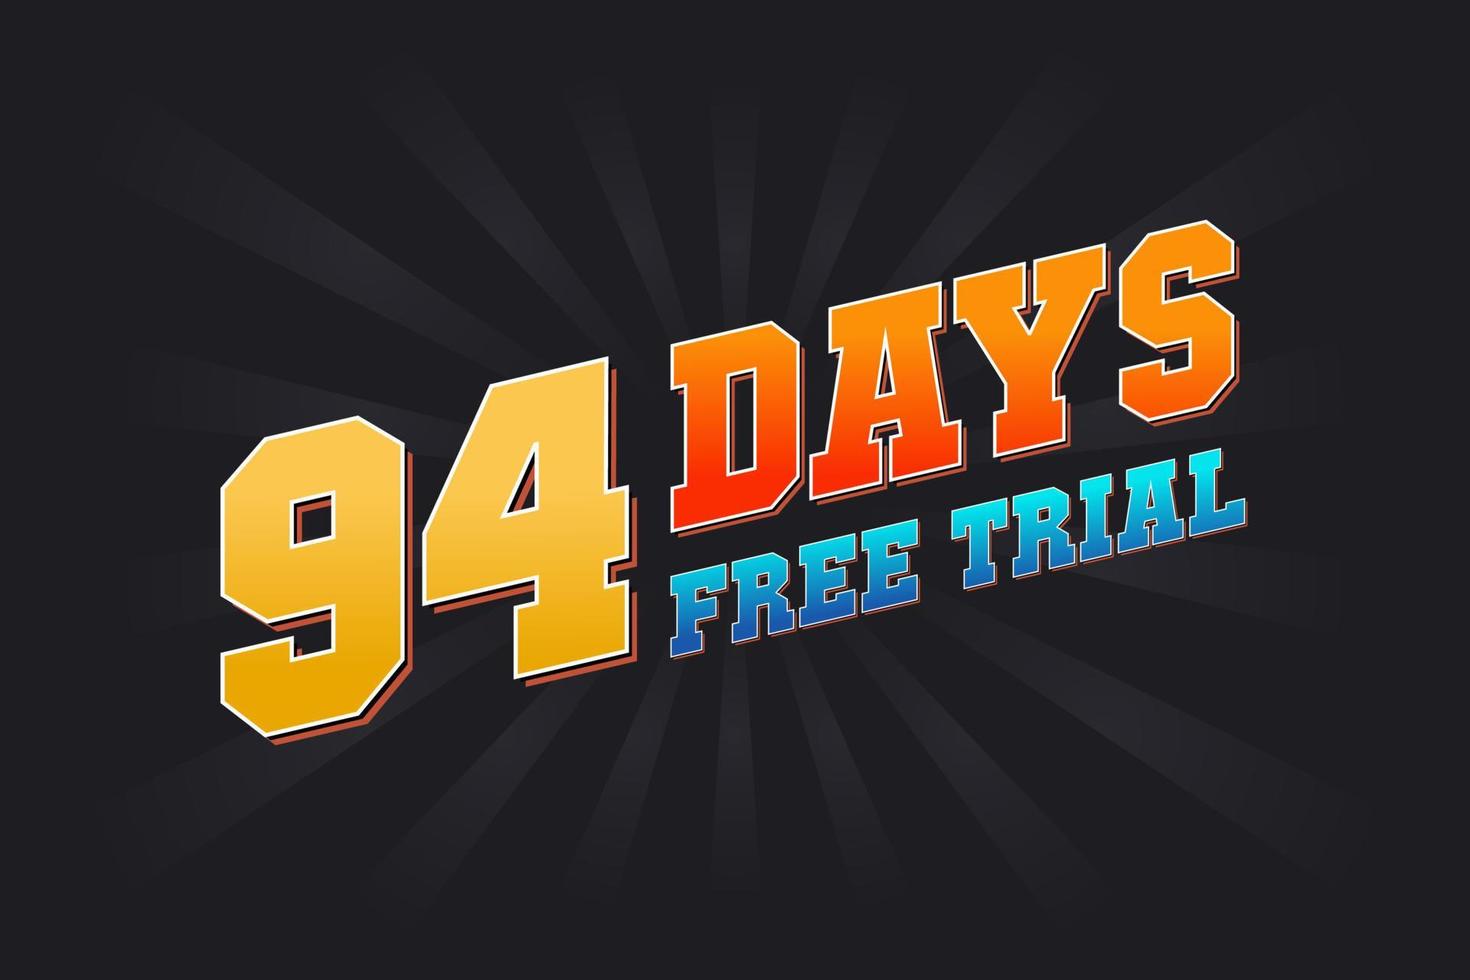 94 giorni gratuito prova promozionale grassetto testo azione vettore